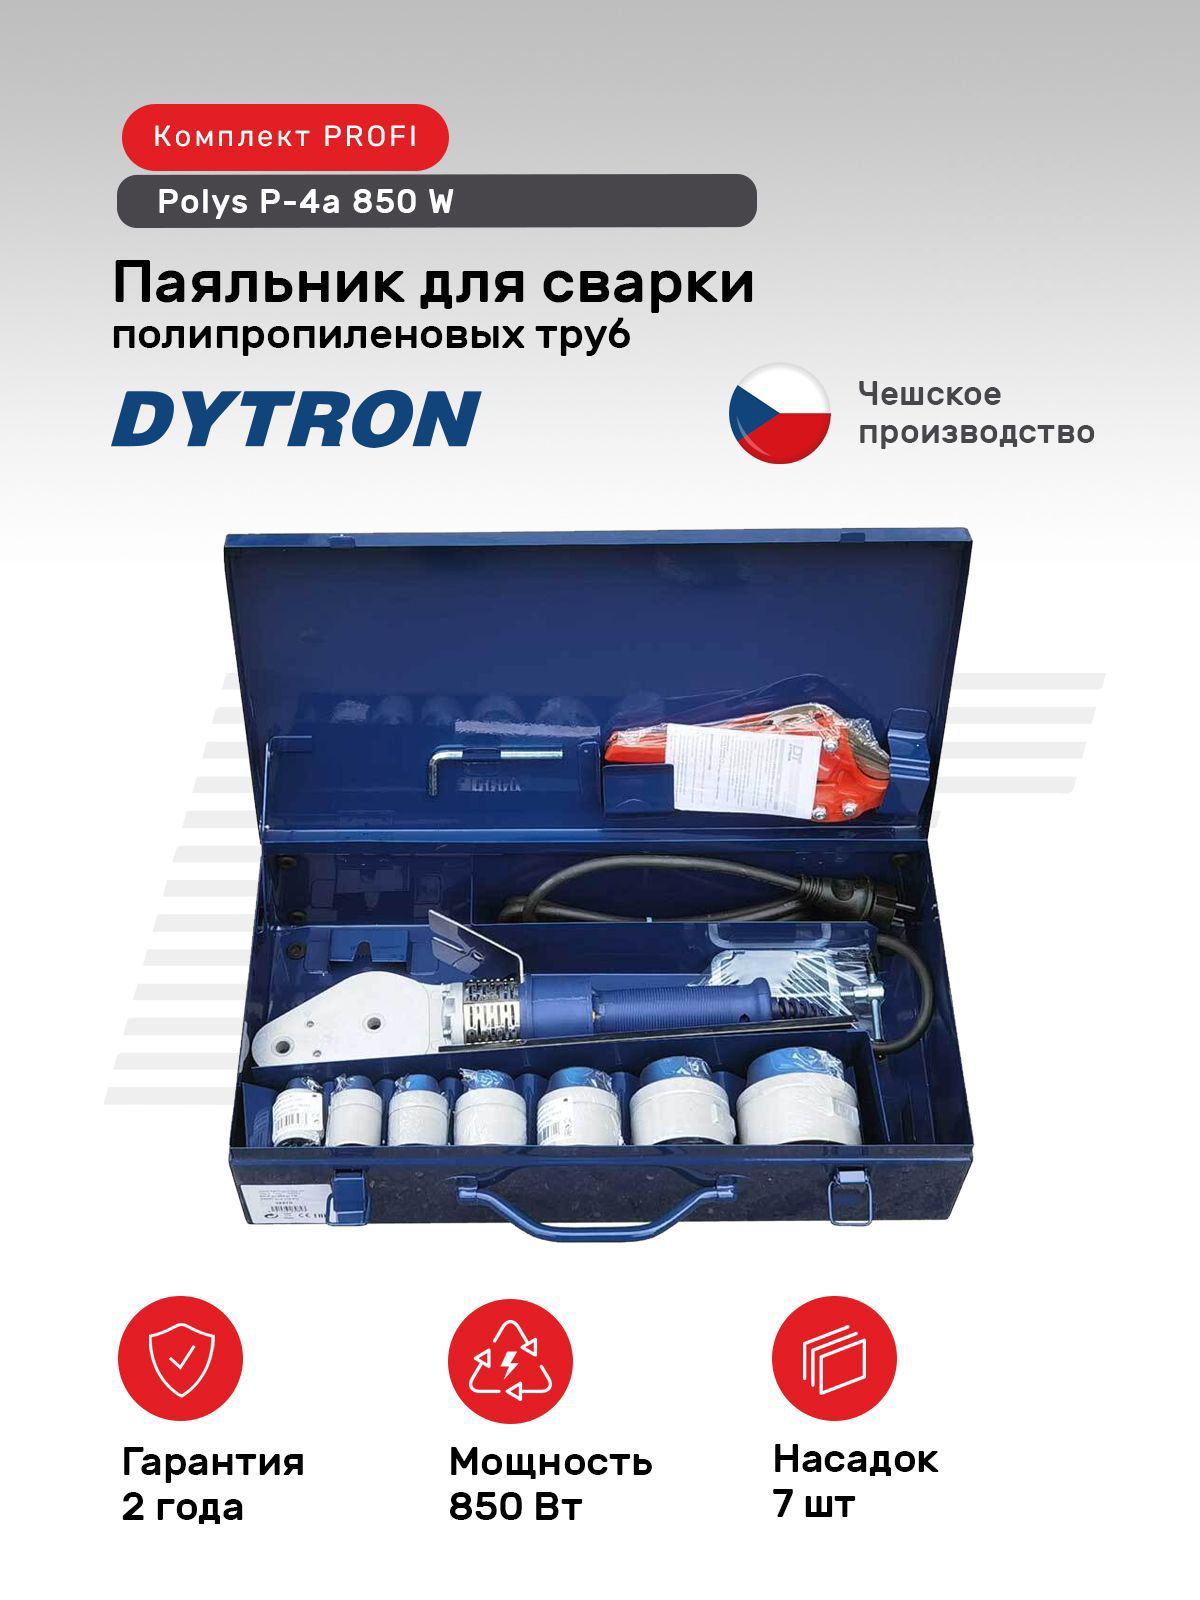 Комплект DYTRON PROFI blue P-4a 850 W, 2369